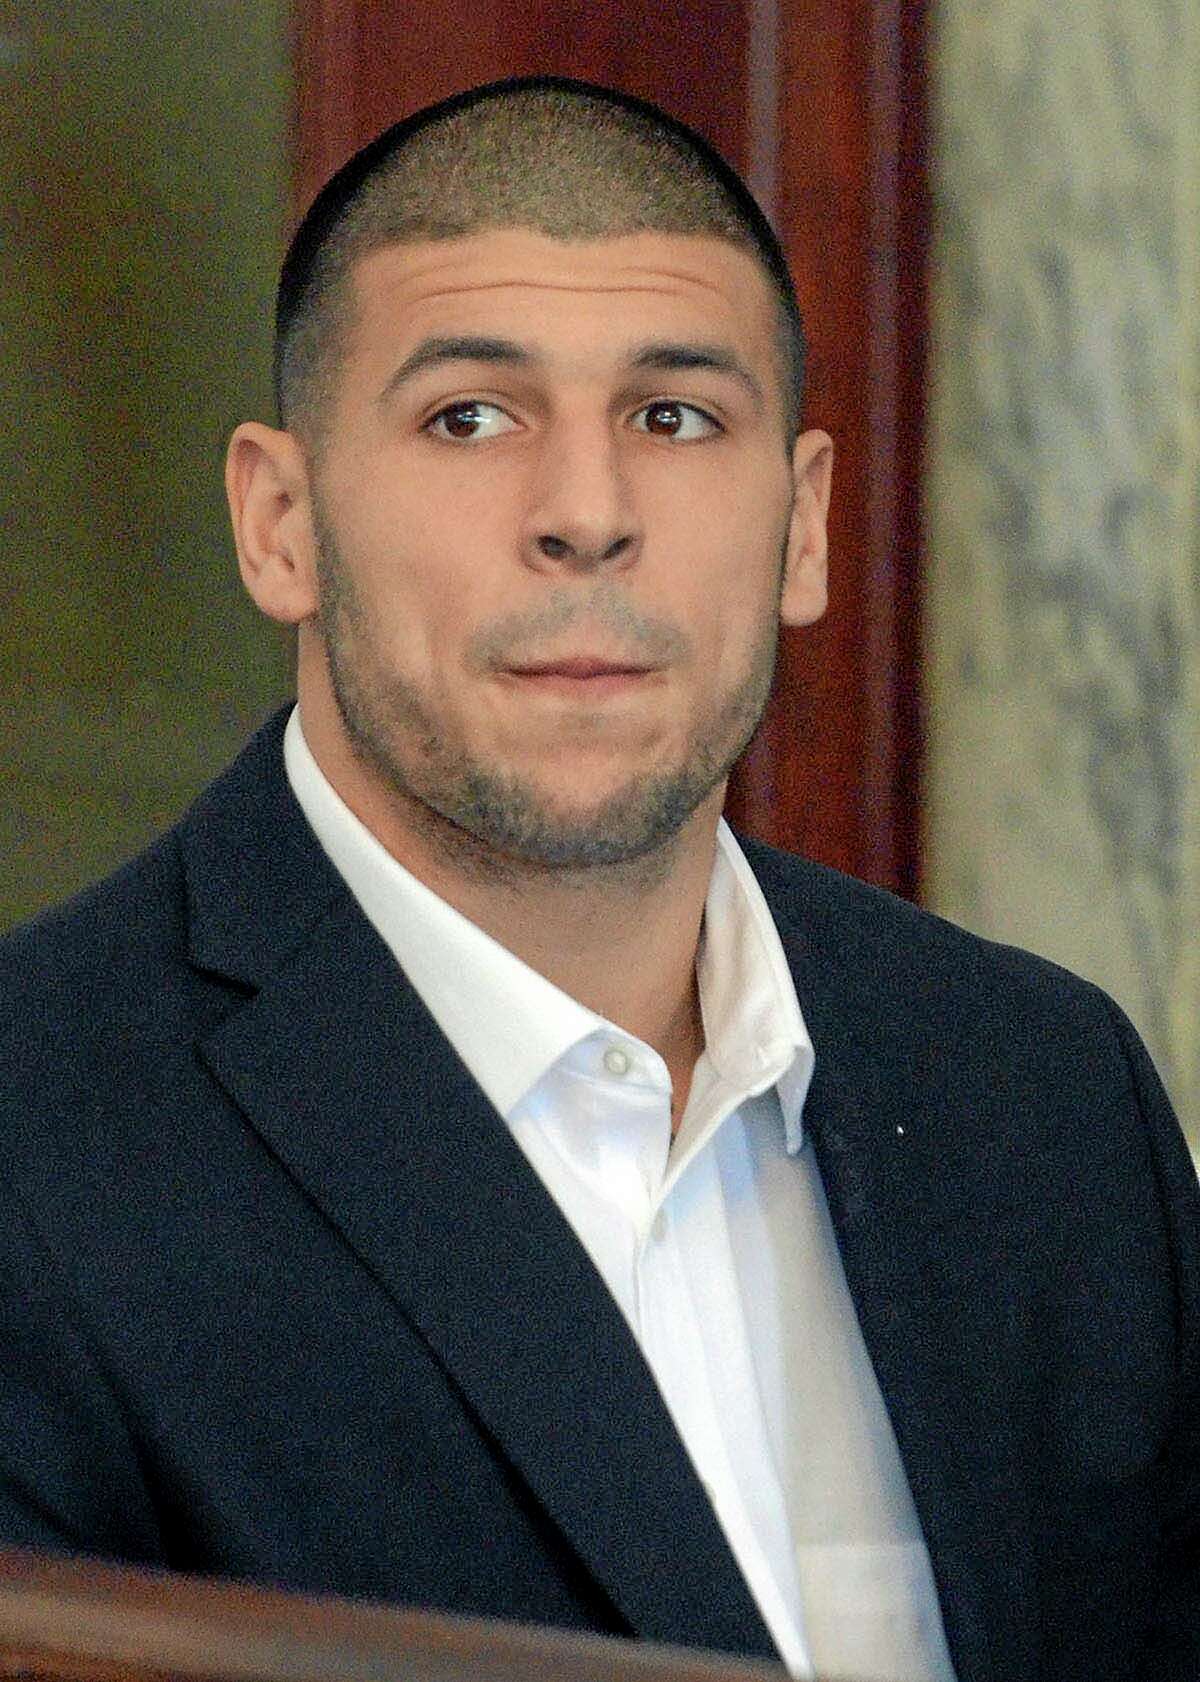 El ex jugador de los Patriots de Nueva Inglaterra, Aaron Hernández, aparece en una audiencia judicial el 30 de agosto de 2013, en Attleboro, Massachusetts. (AP Photo/The Sun Chronicle, Mike George, Pool, File)